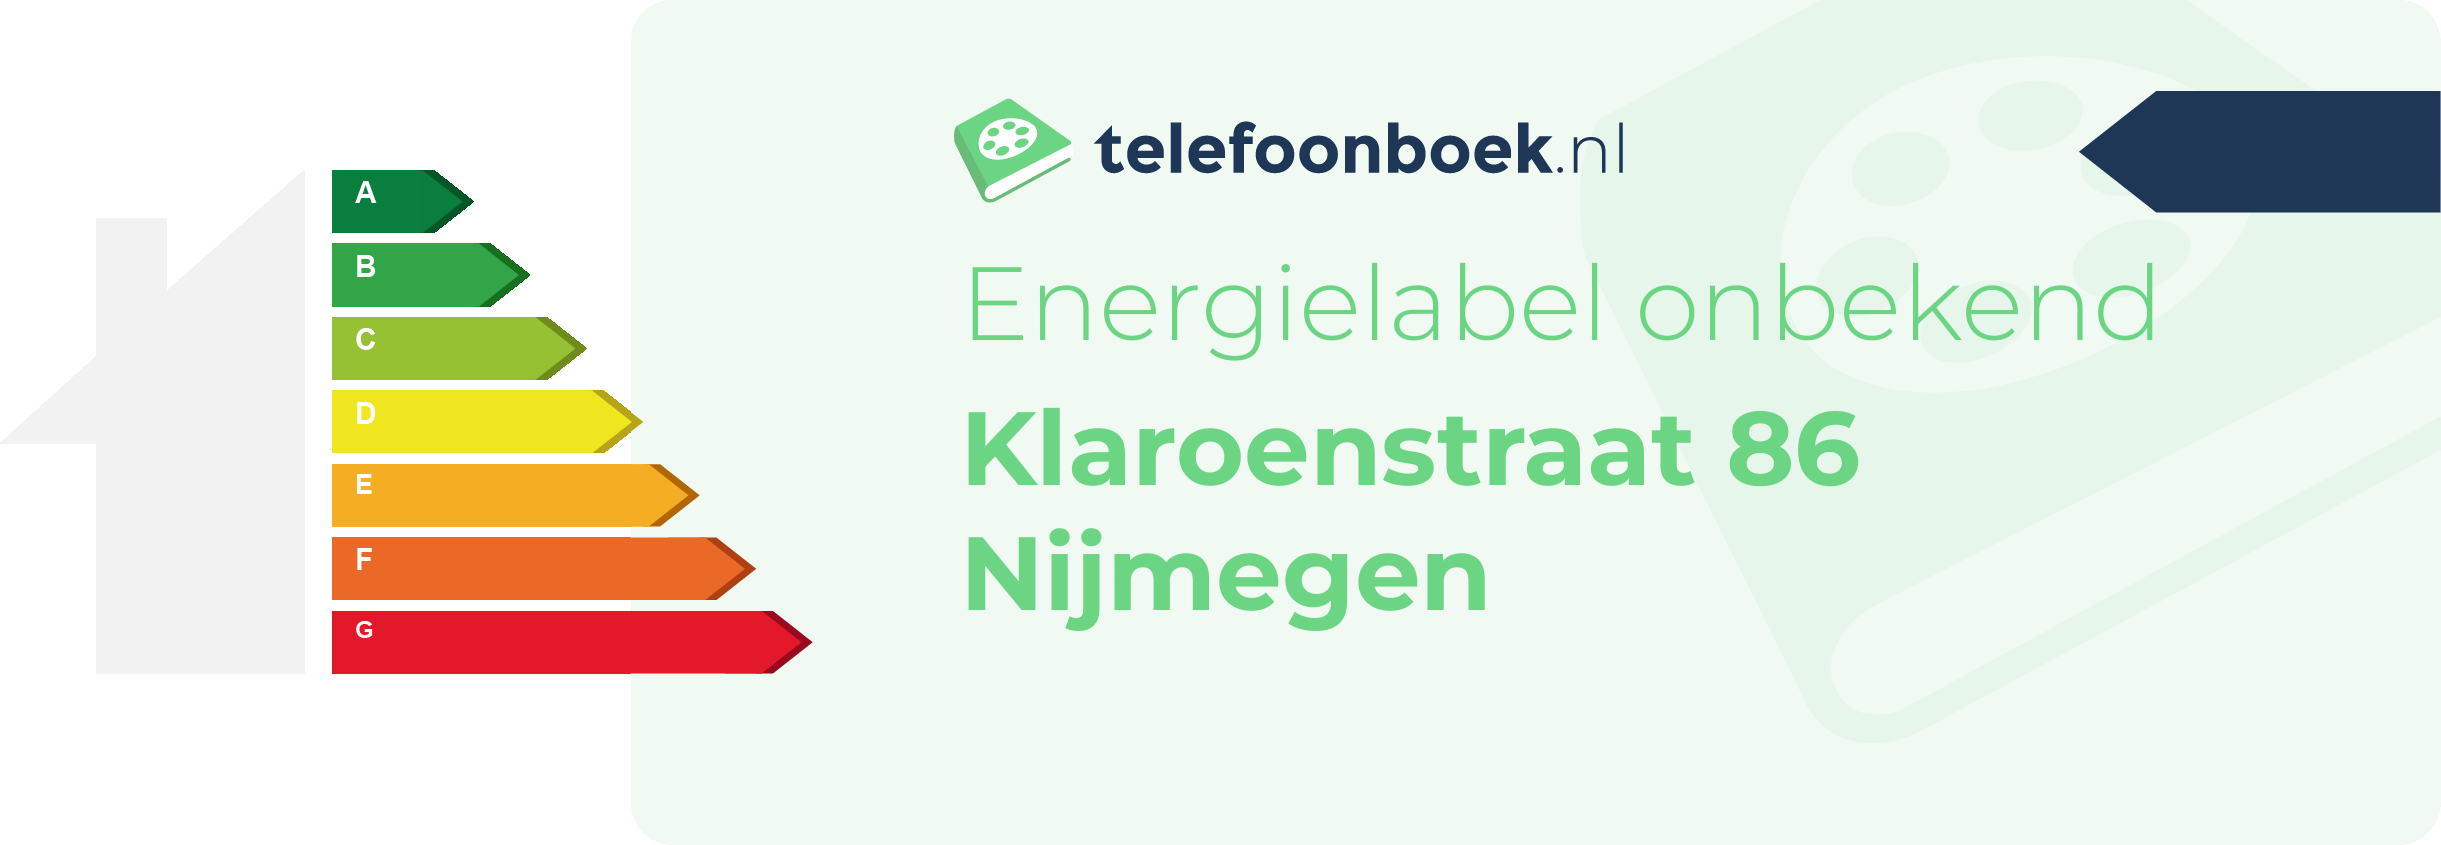 Energielabel Klaroenstraat 86 Nijmegen